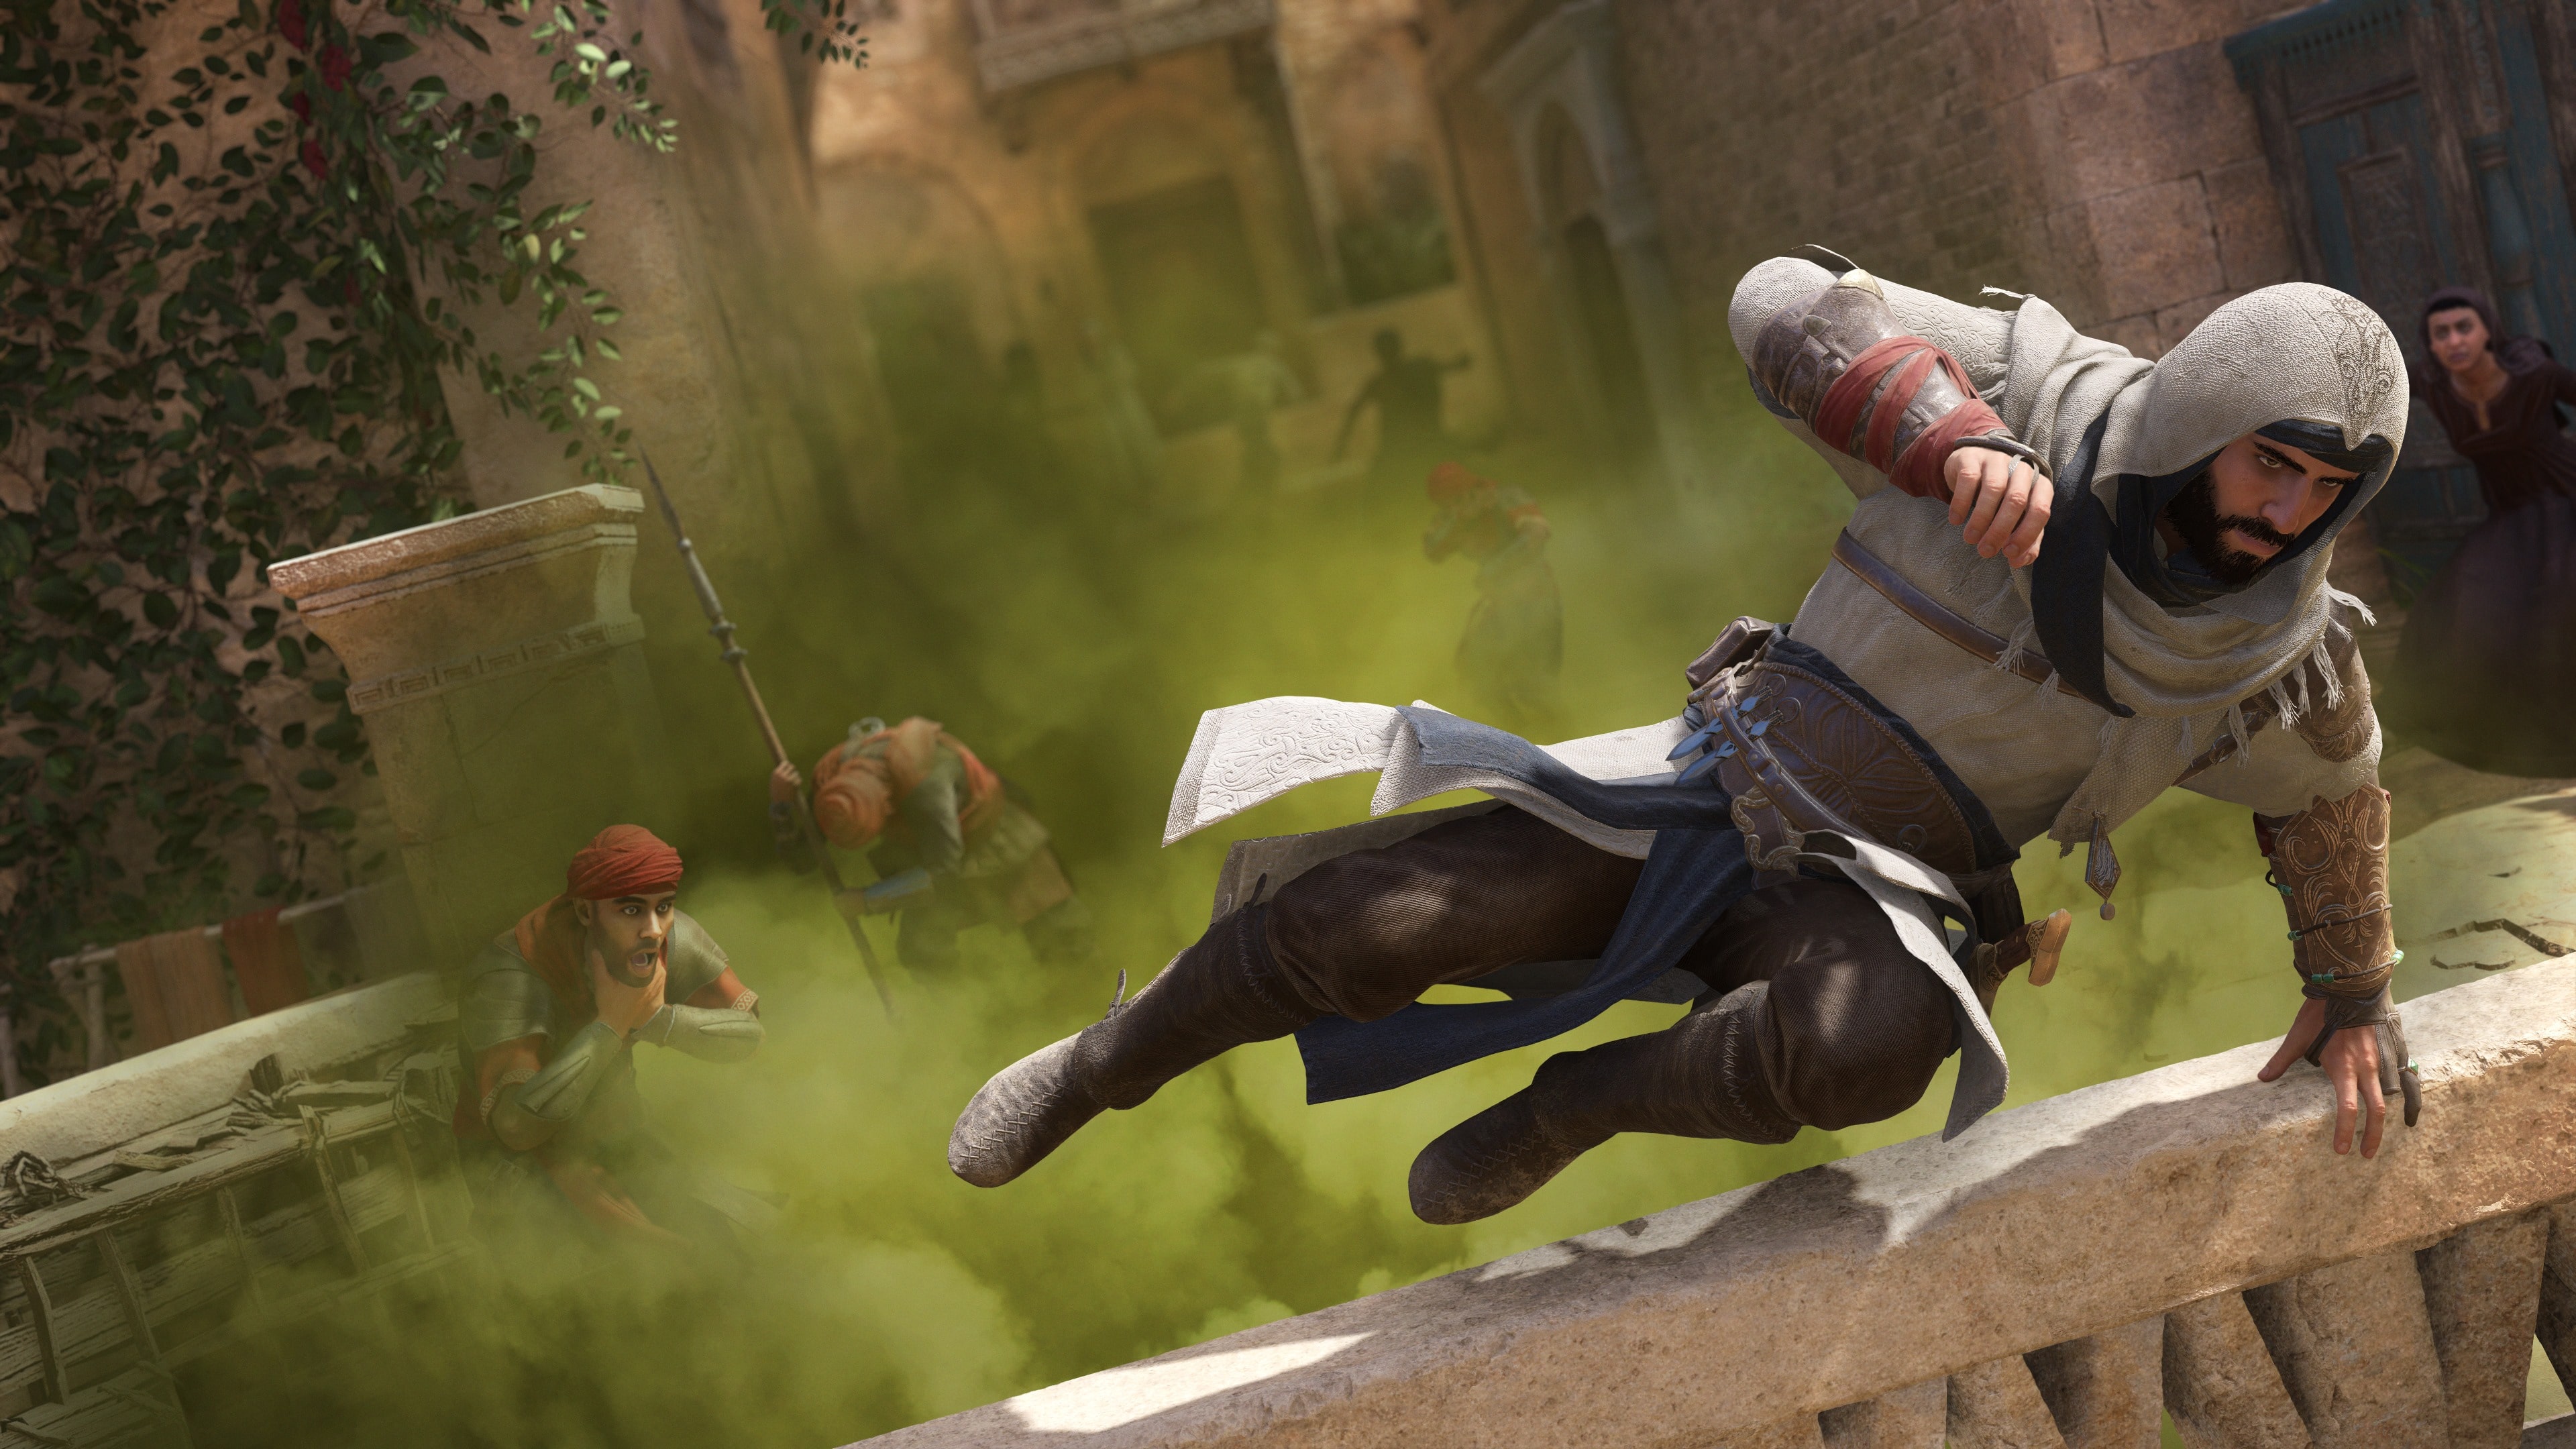 Assassin's Creed Mirage - Juegos PS4 & PS5